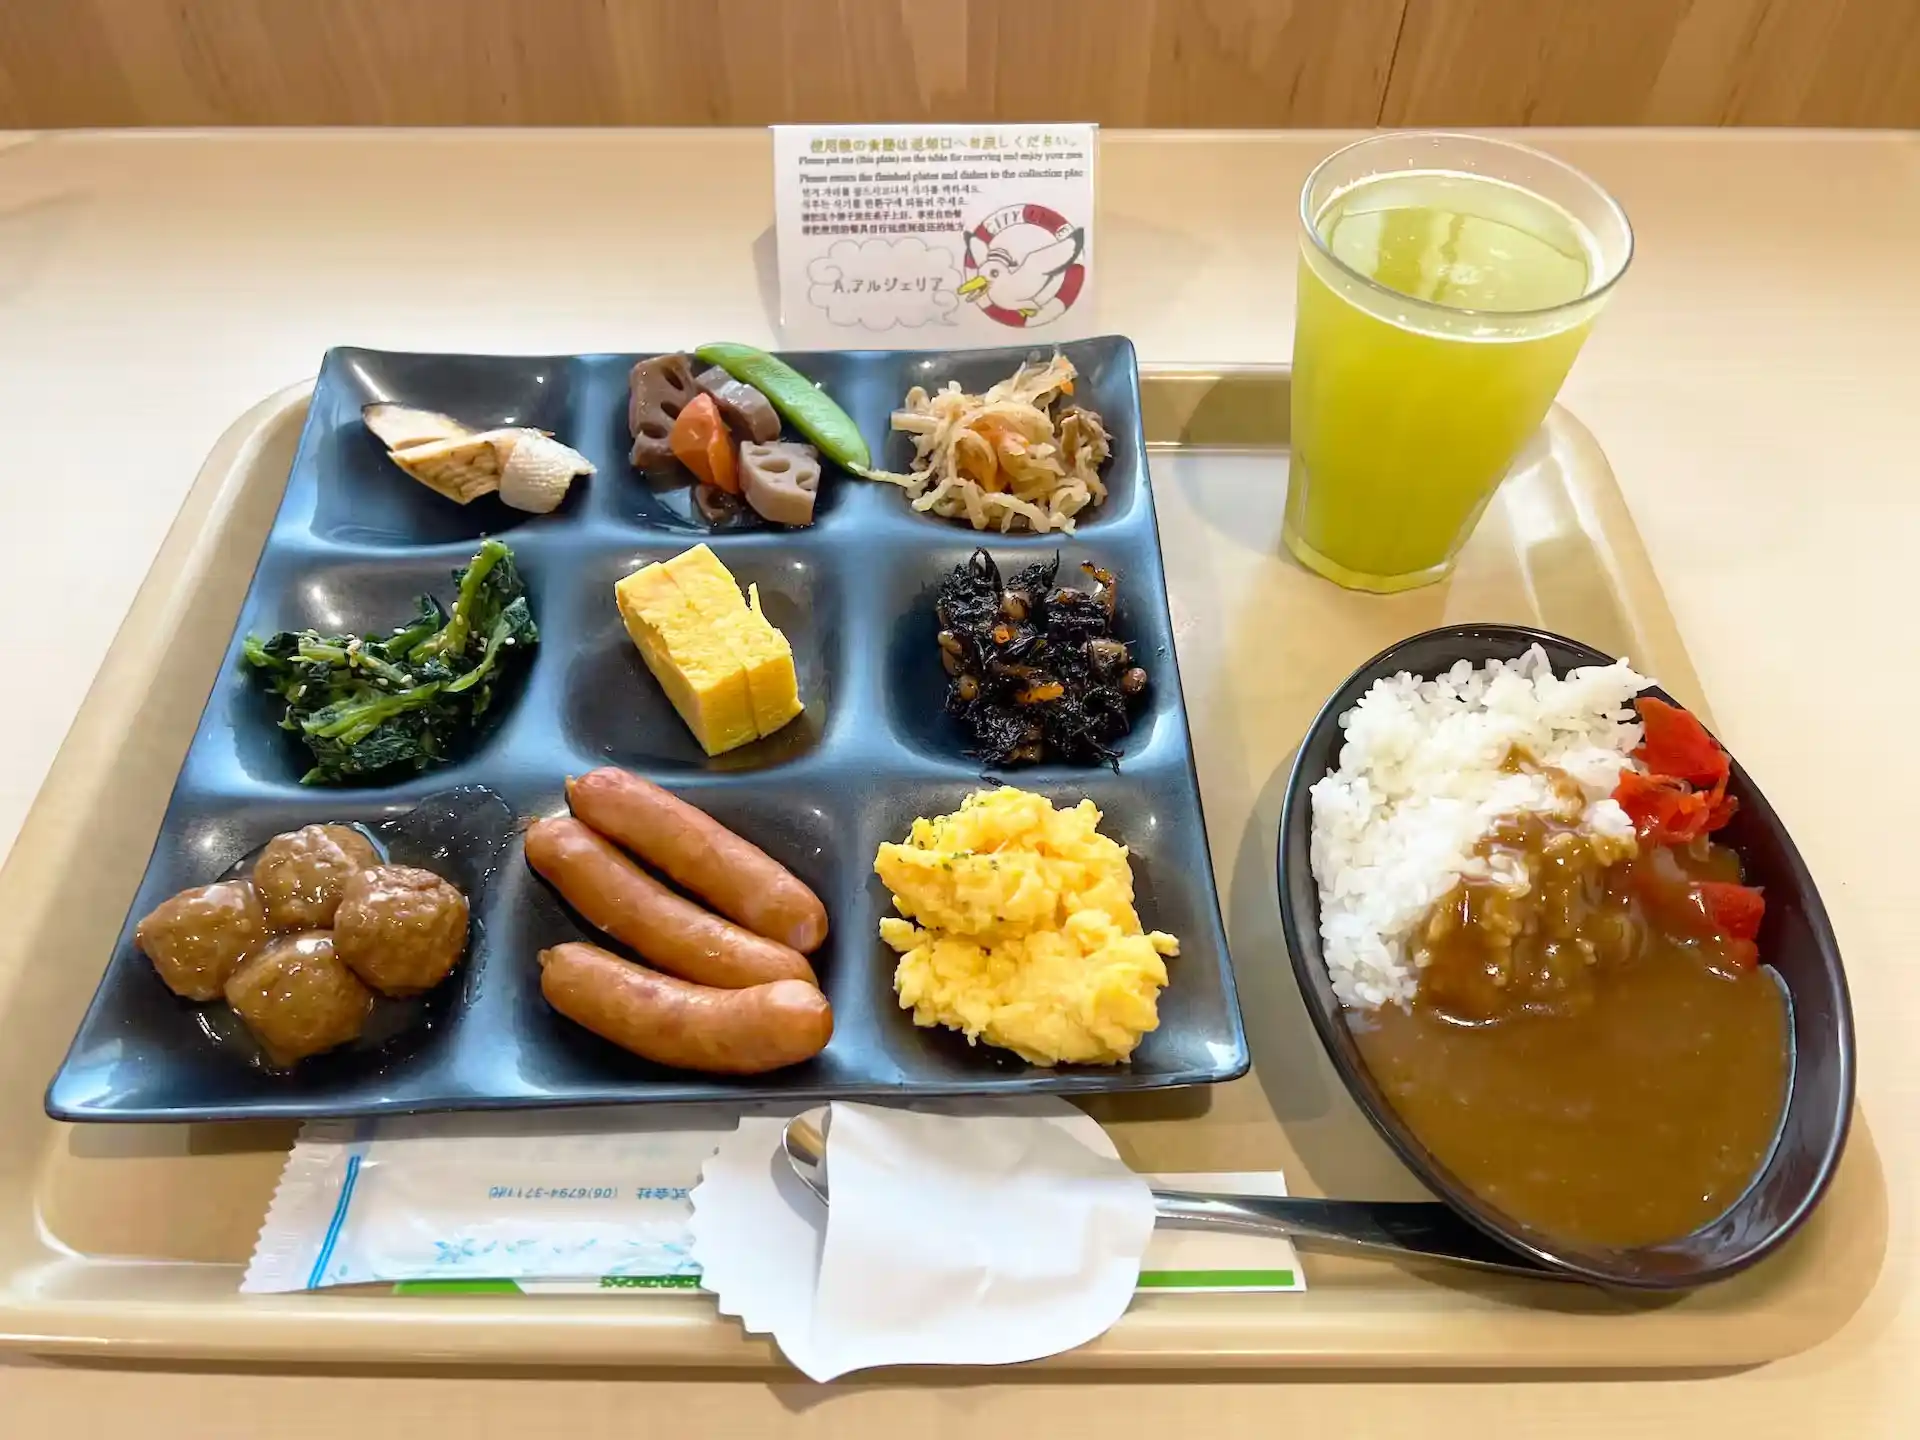 Breakfast buffet food at the observation restaurant on board the Meimon Taiyo Ferry Fukuoka